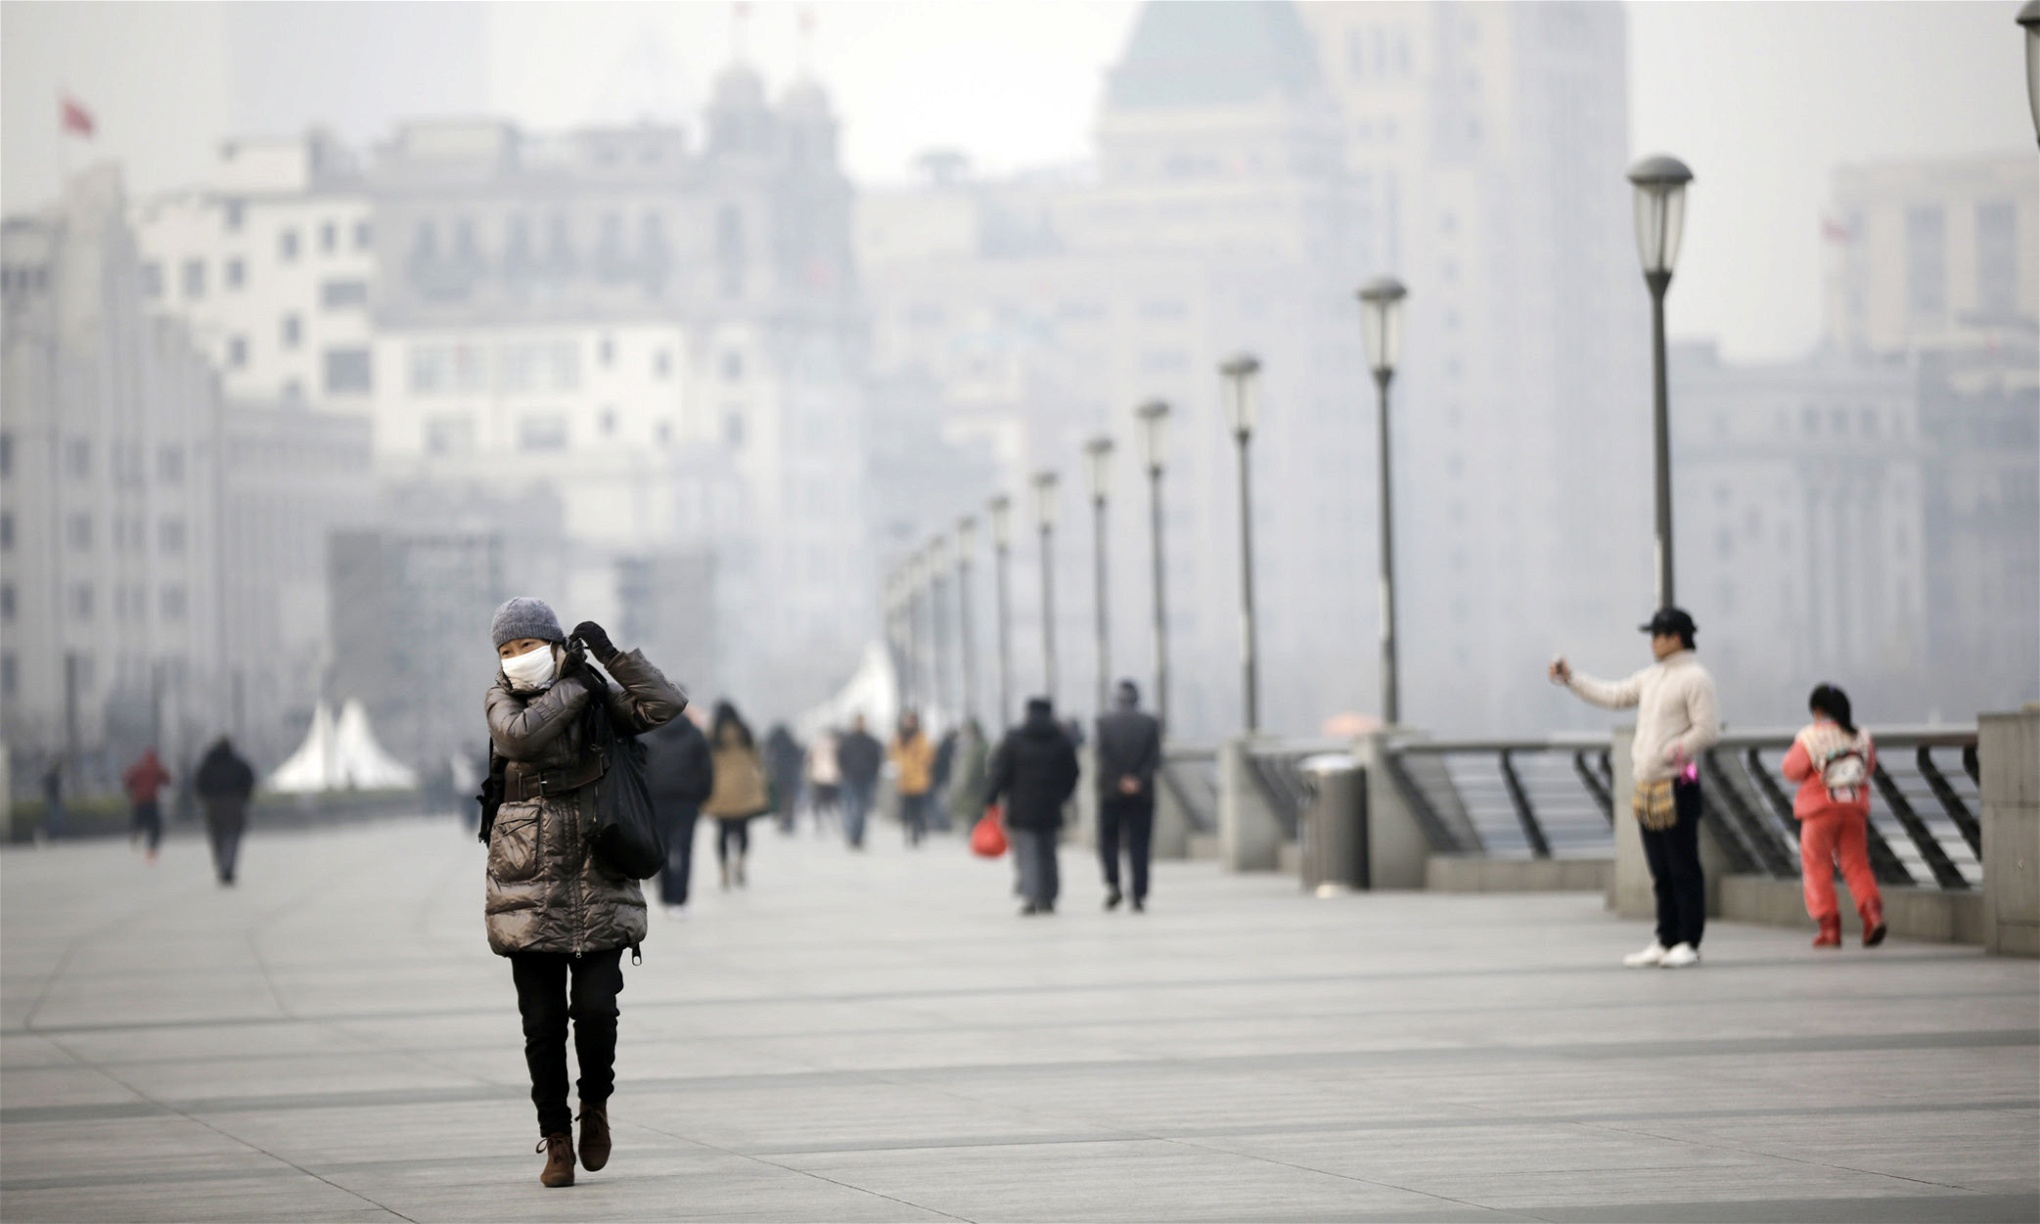 Shanghai, Kina. Även om utsläppen av växthusgaser skulle upphöra i morgon skulle den mängd koldioxid
som ansamlats i atmosfären ge upphov till en global
temperaturökning, sannolikt på 1,5 till 2 grader.